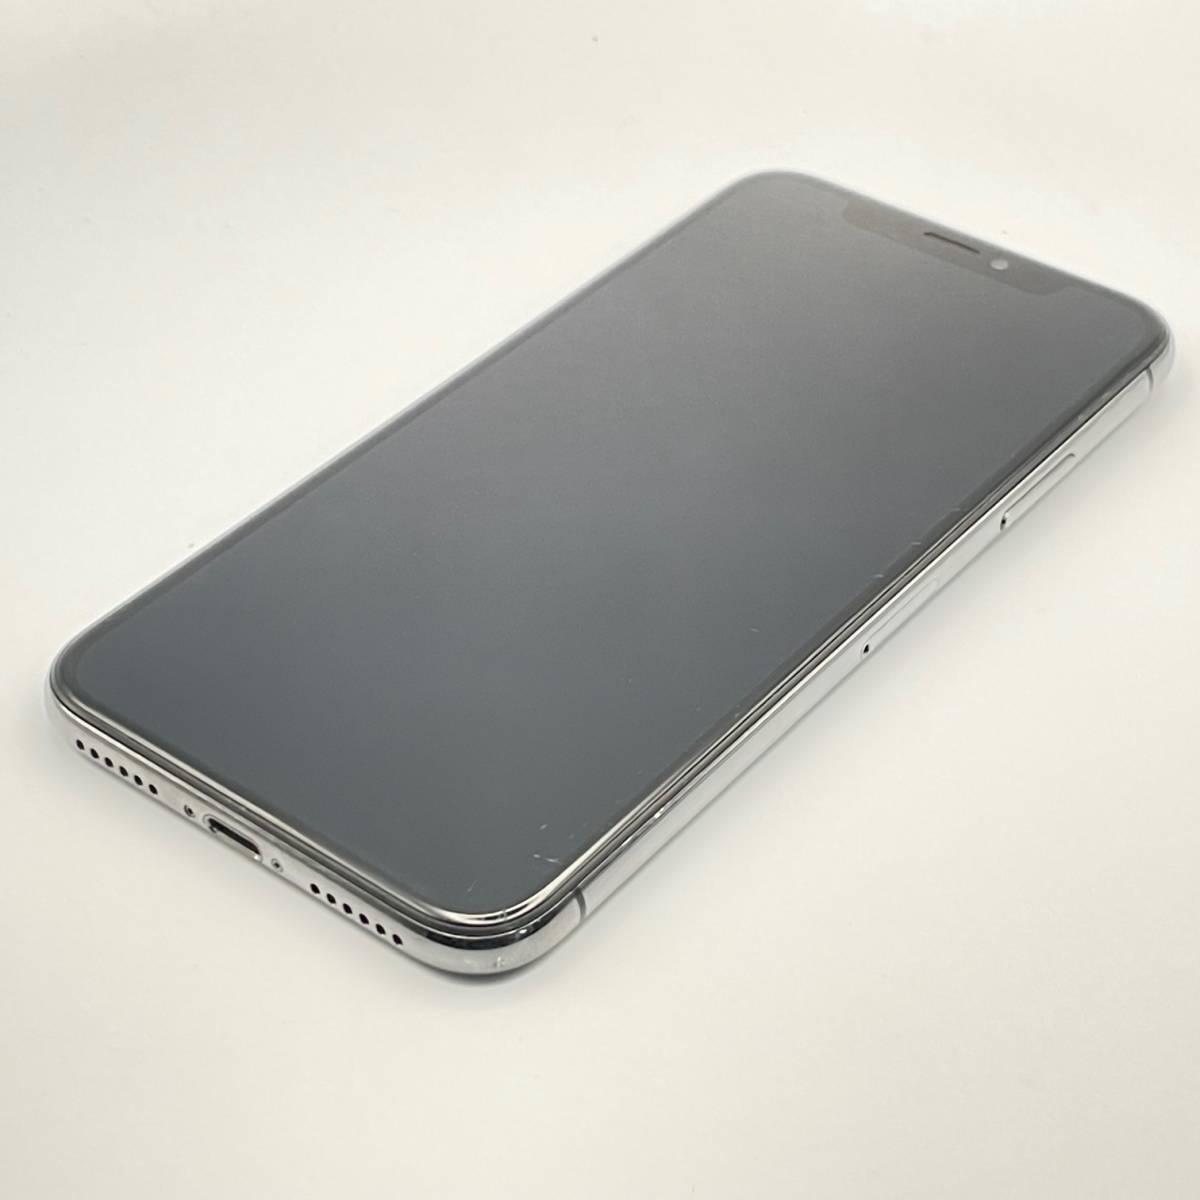 ジャンク品扱い Apple アップル iPhone X 256GB スペースグレイ SIM